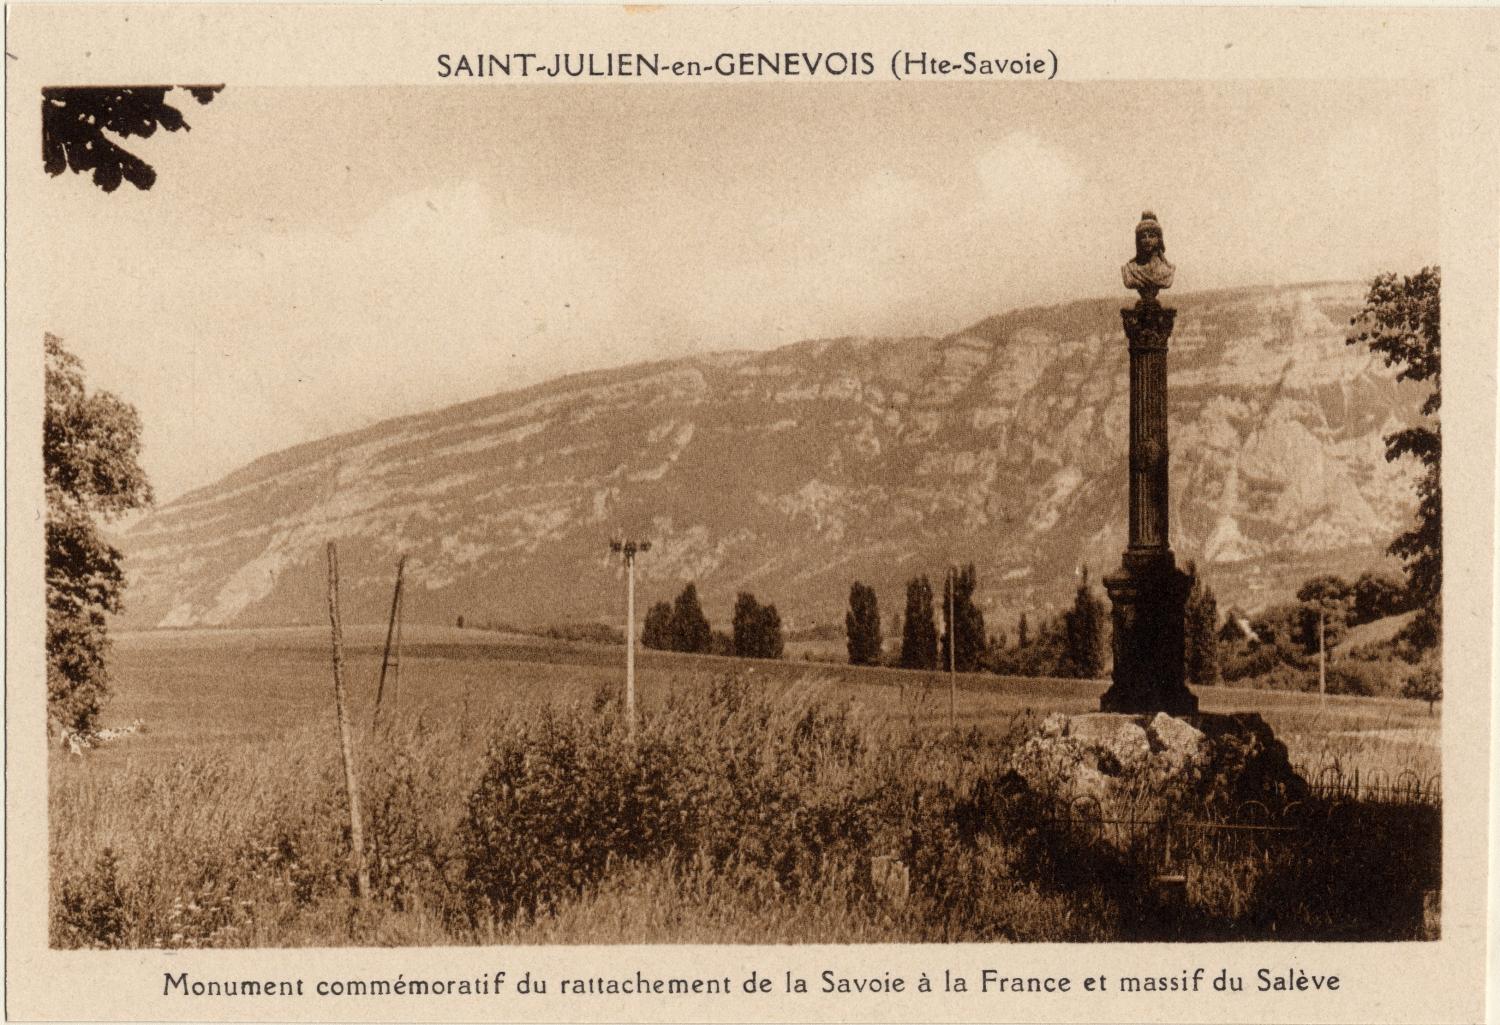 St-Julien-en-Genevois (Hte-Savoie) : Monument commémoratif du rattachement de la Savoie à la France et massif du Salève